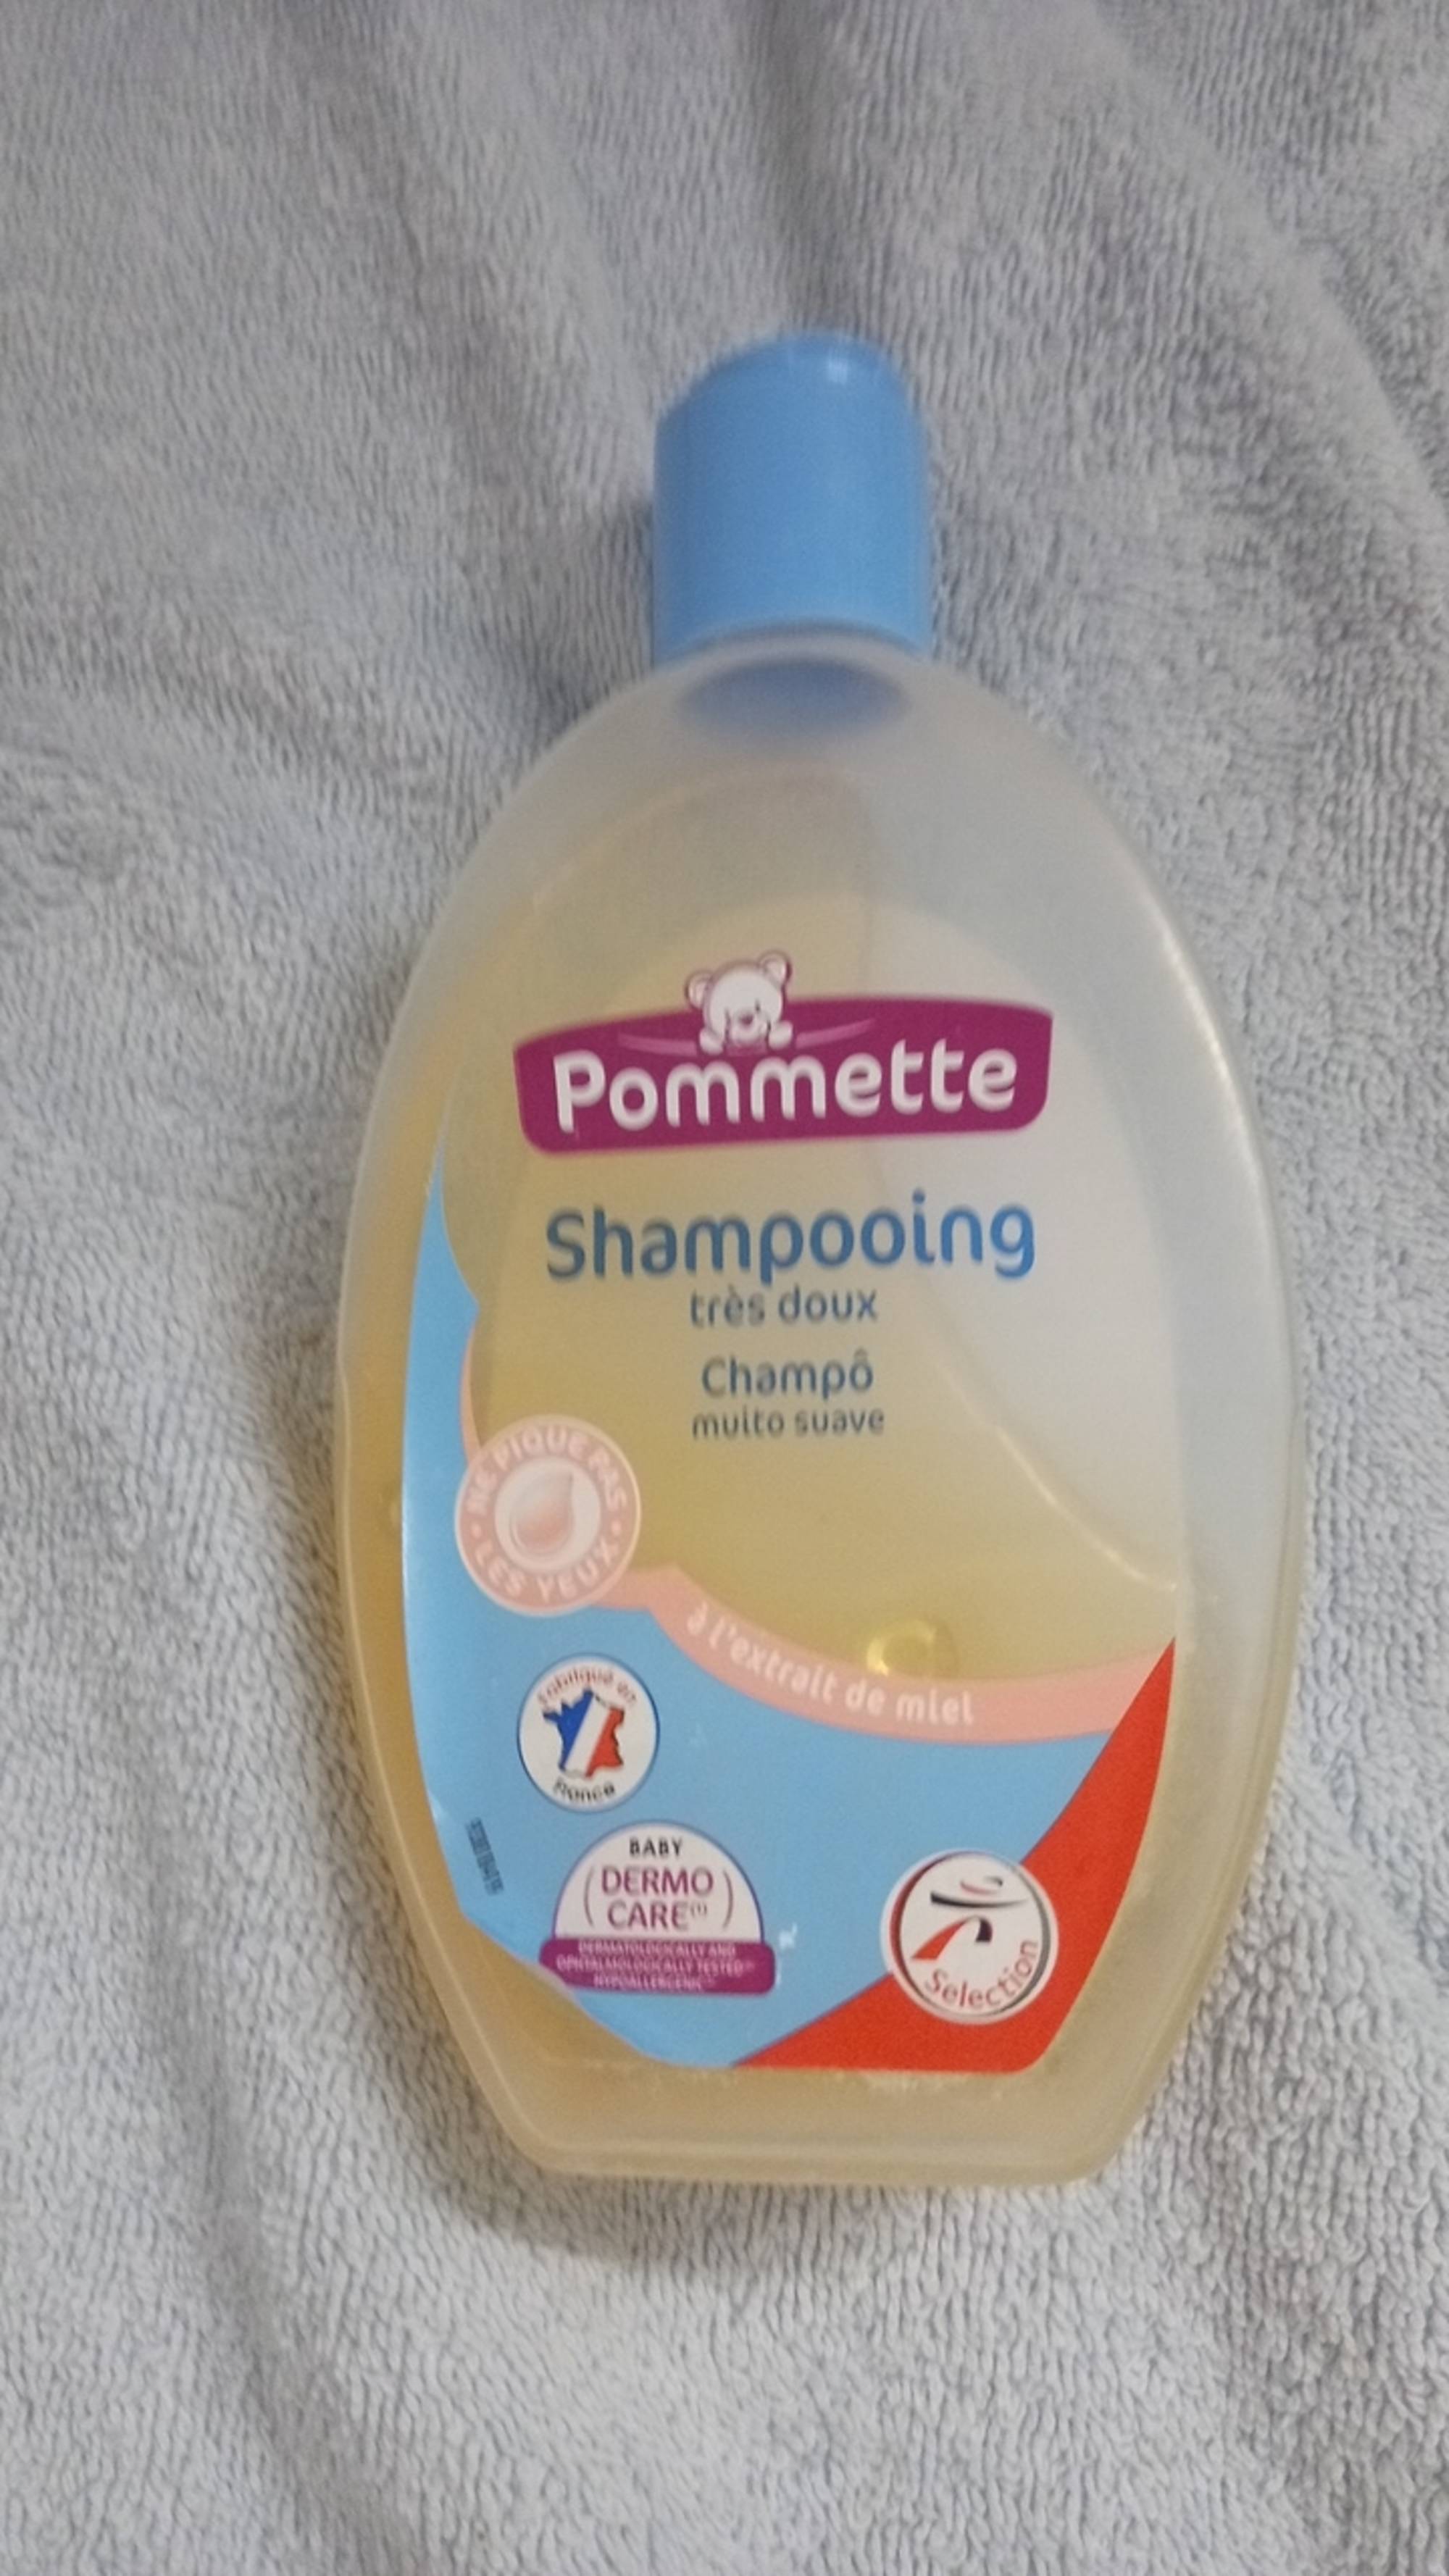 POMMETTE - Shampooing très doux